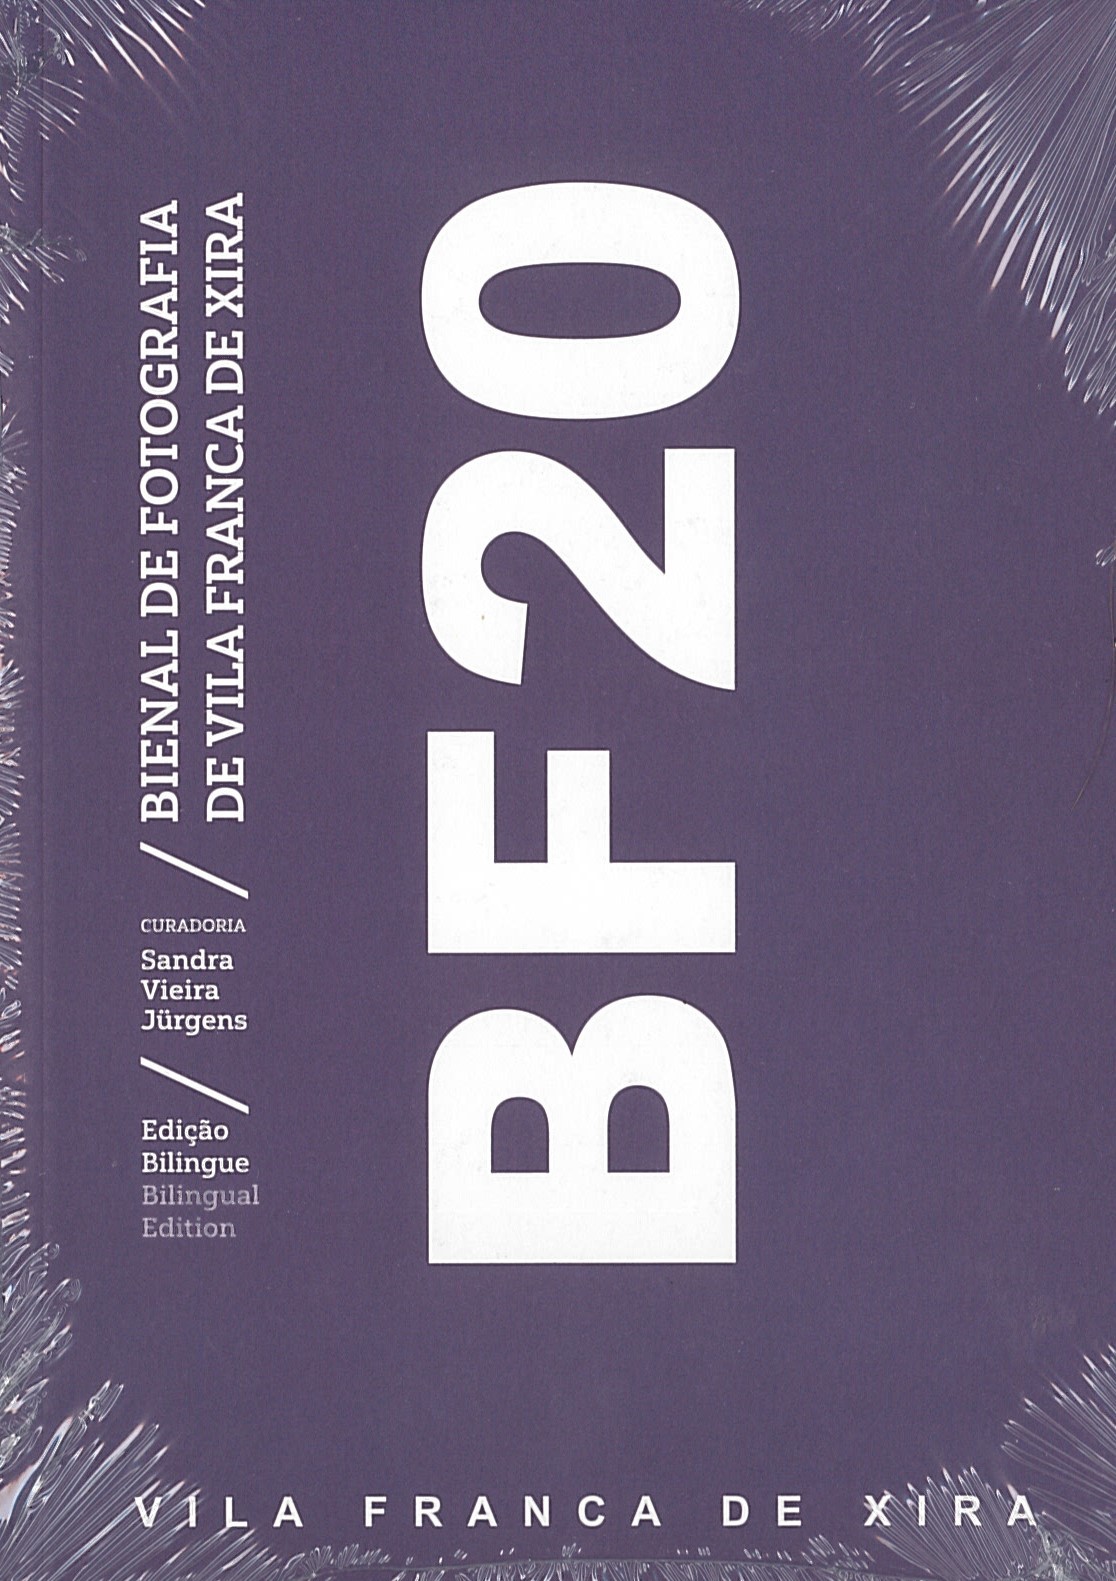 Catálogo da BF20